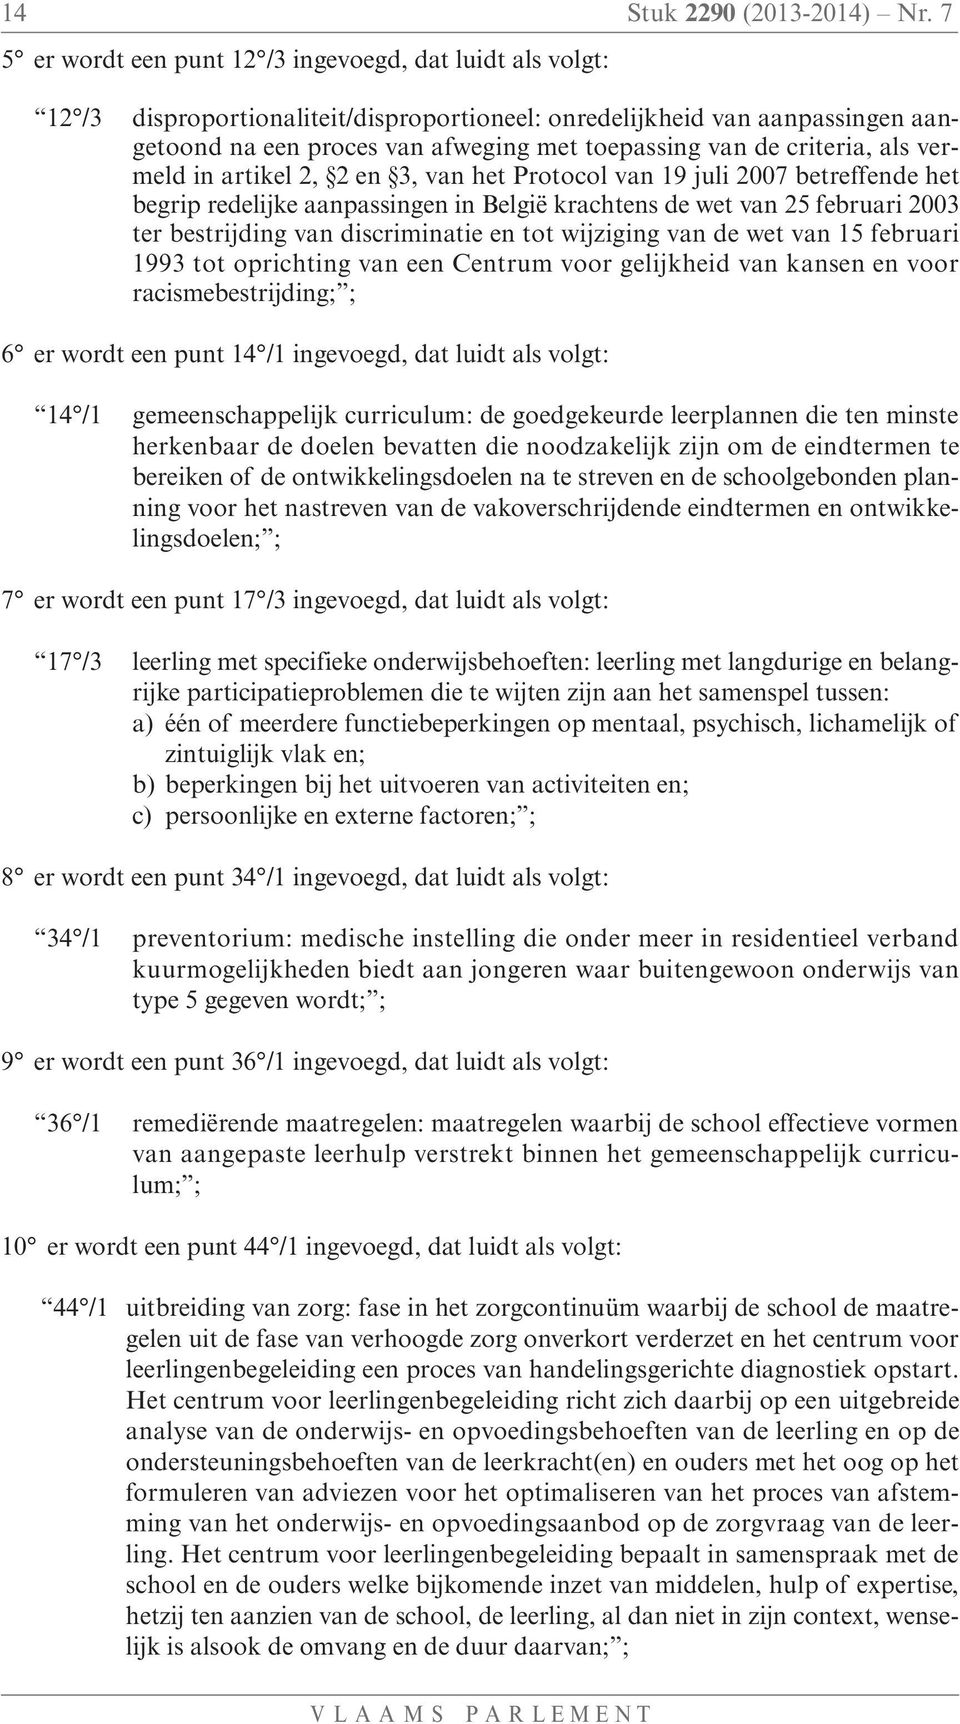 criteria, als vermeld in artikel 2, 2 en 3, van het Protocol van 19 juli 2007 betreffende het begrip redelijke aanpassingen in België krachtens de wet van 25 februari 2003 ter bestrijding van